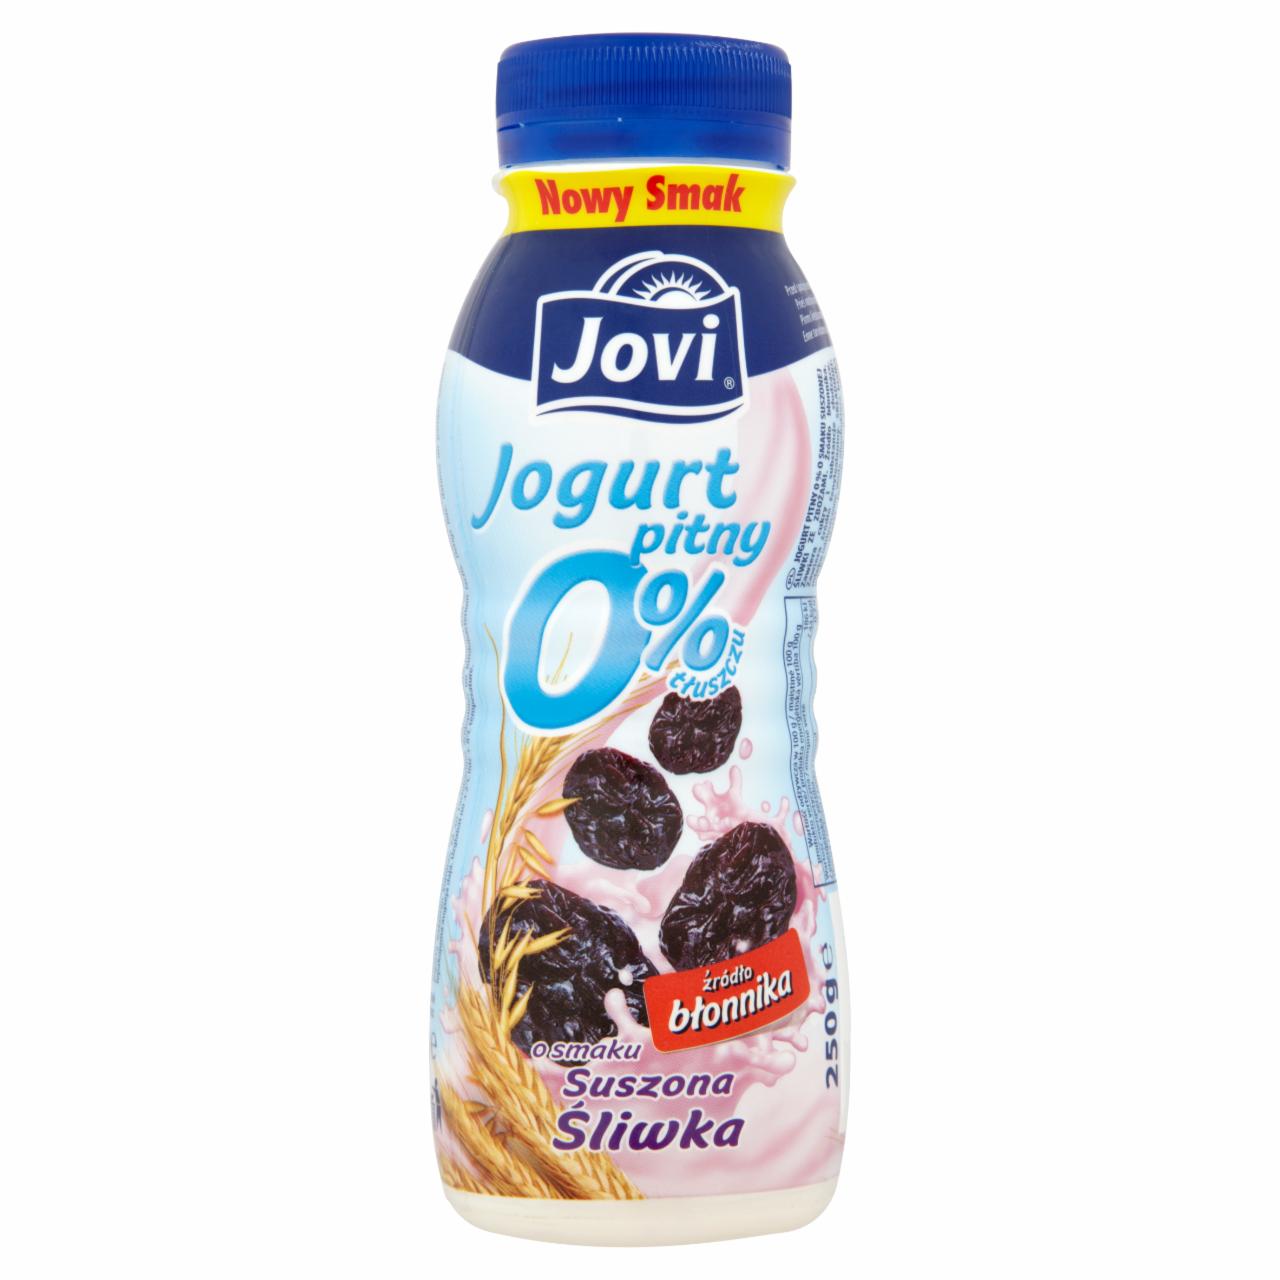 Zdjęcia - Jovi Jogurt pitny 0% o smaku suszona śliwka 250 g